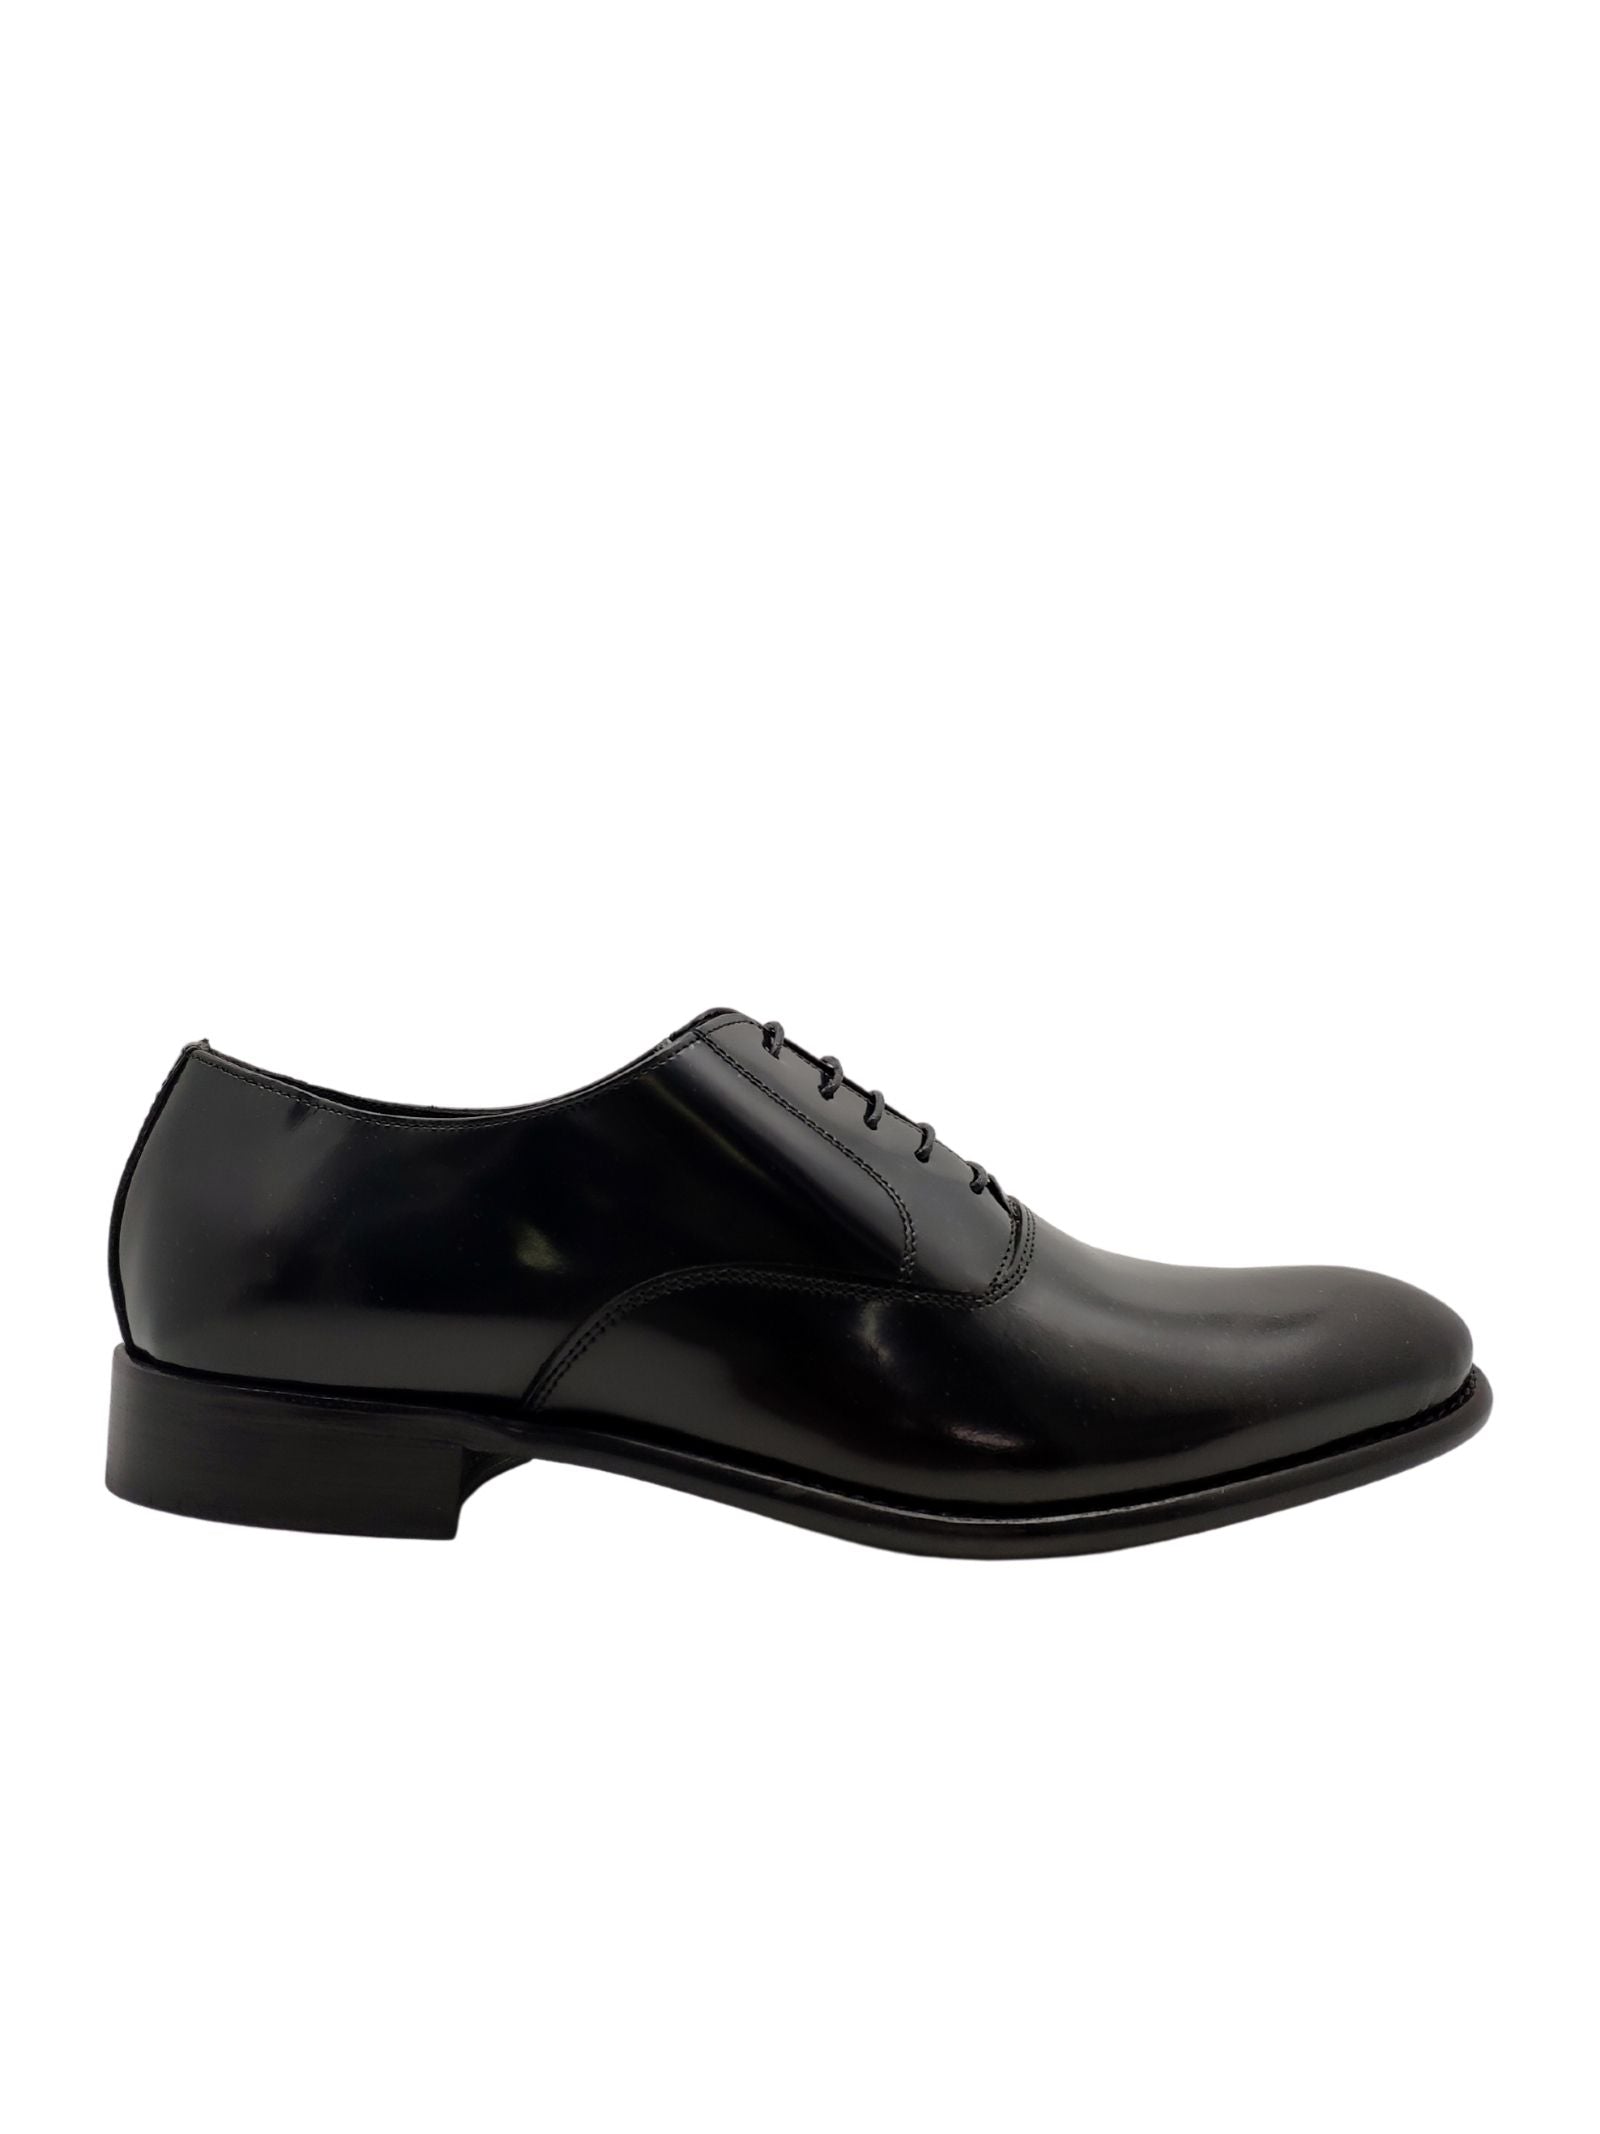 Chaussures à lacets noires pour hommes